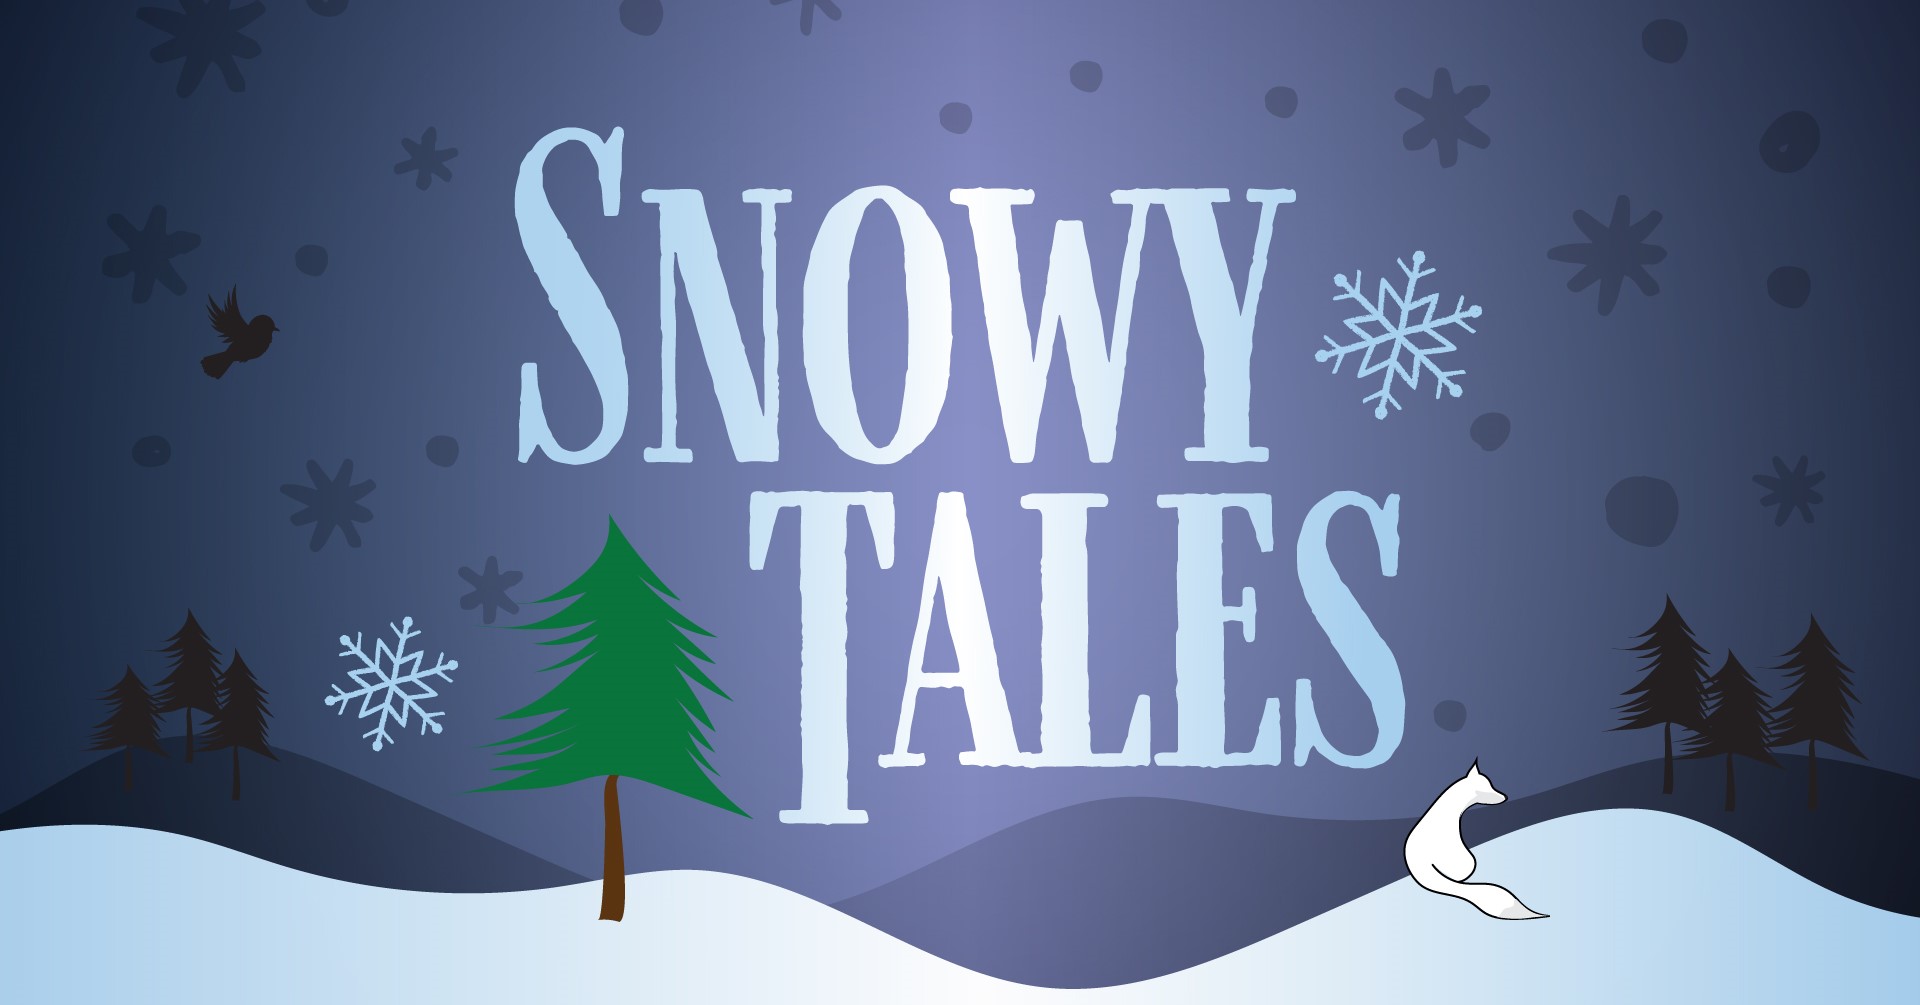 Snowy Tales logo